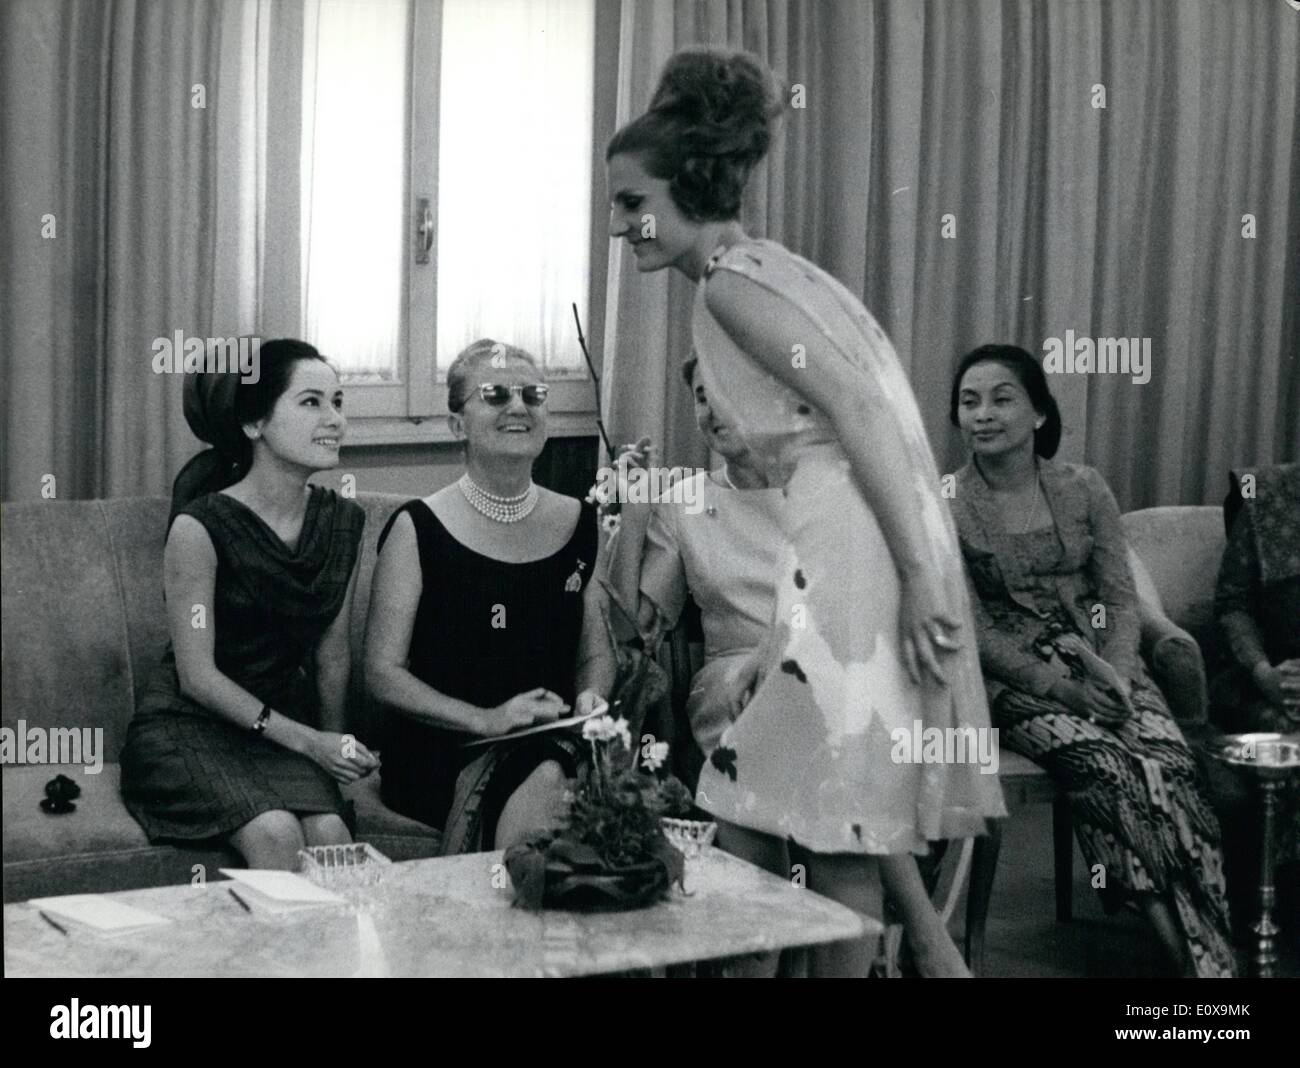 Diciembre 12, 1965 - Roma 12.7.65 - Presidente Sukarno, su nueva esposa  visita Roma. Ratna Sari Dewi, de 24 años, la hermosa esposa japonesa del  Dr. Sukarno, el presidente indonesio llegó ayer